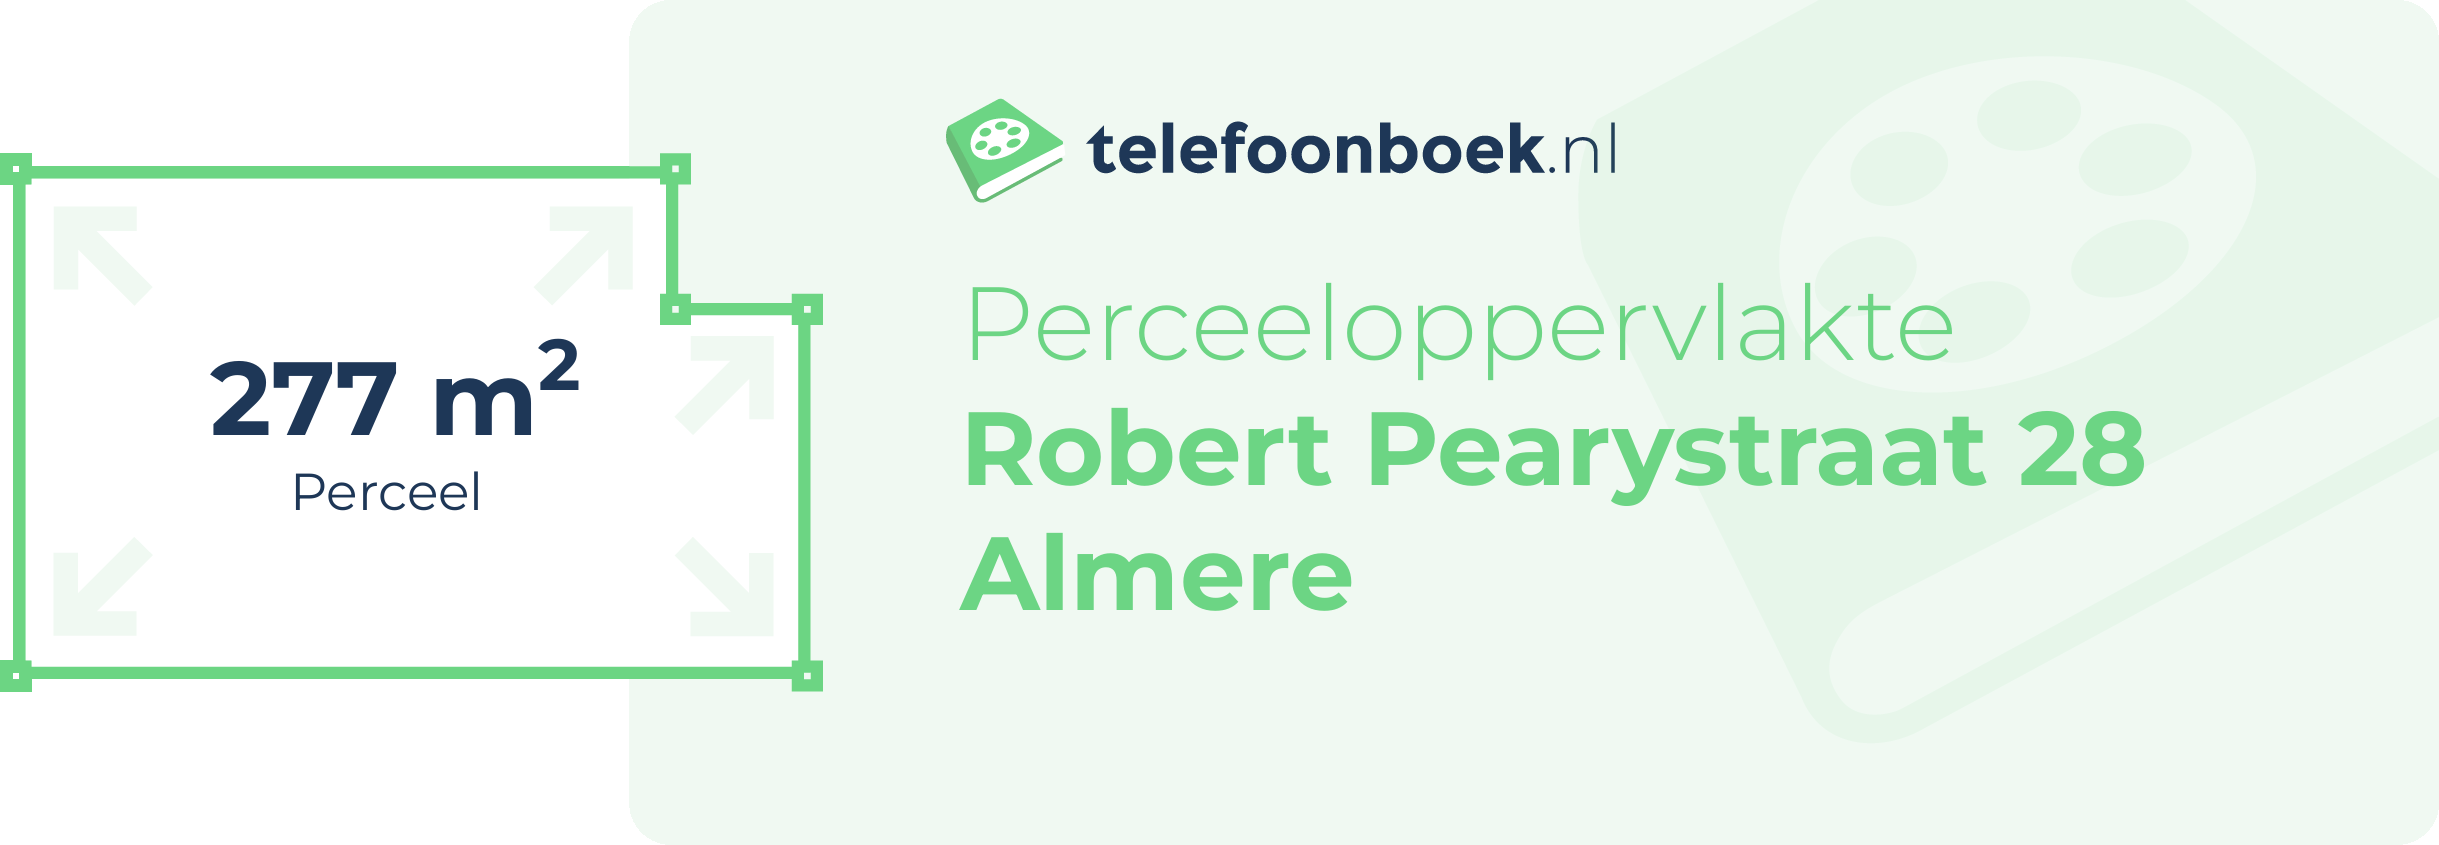 Perceeloppervlakte Robert Pearystraat 28 Almere